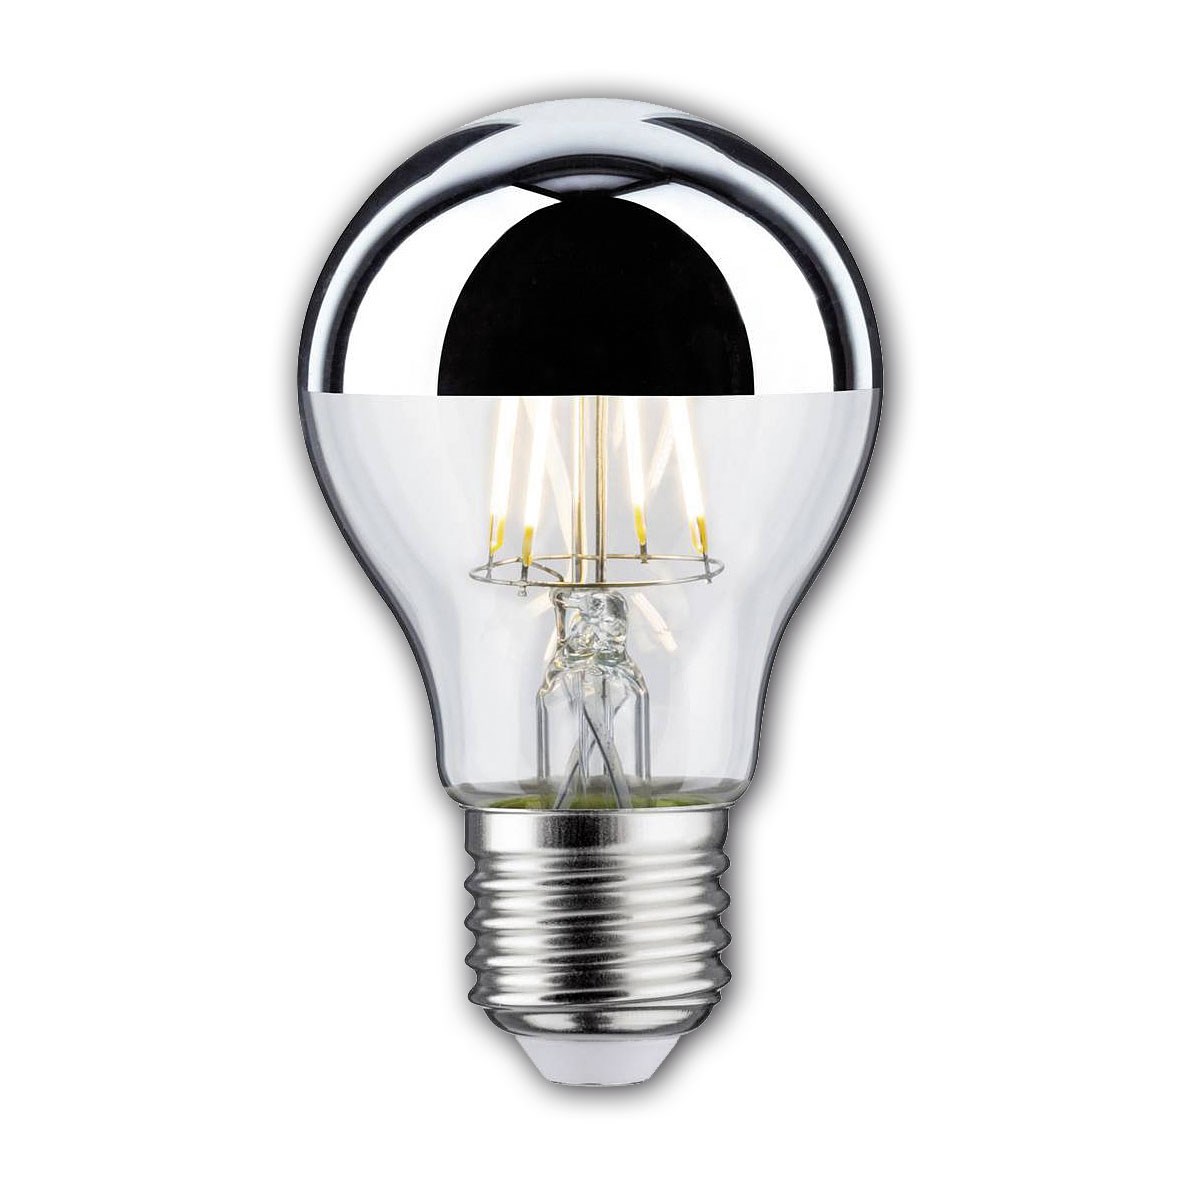 Bild von AGL LED Kopfspiegellampe silber / 600 Lumen / 6,5W / E27 / 230V / 2.700K / 827 Warmweiß